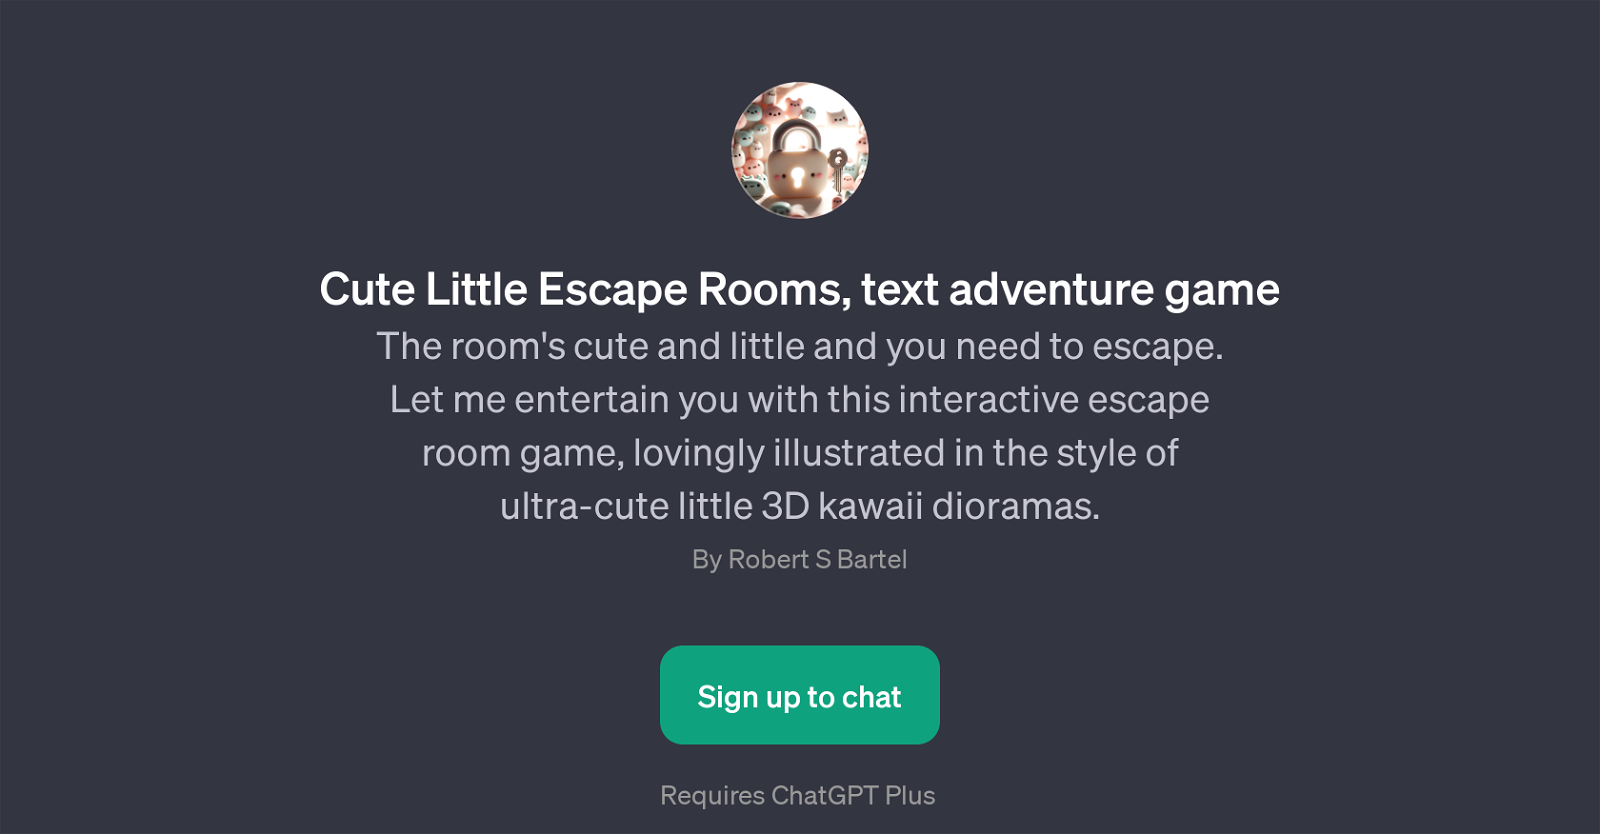 Cute Little Escape Rooms website